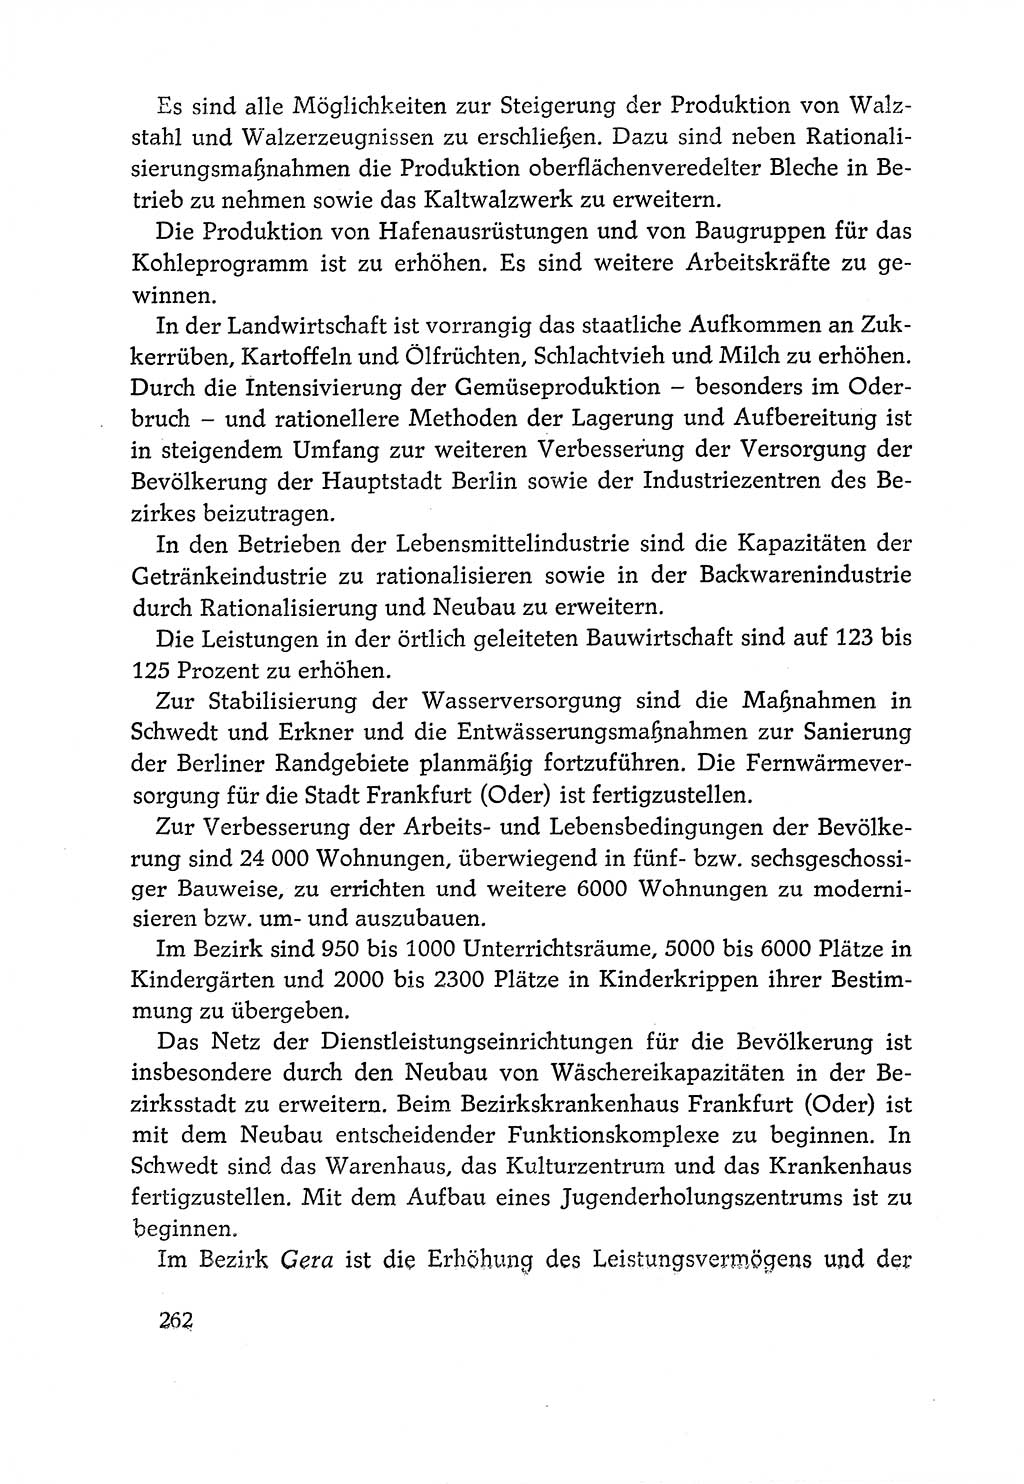 Dokumente der Sozialistischen Einheitspartei Deutschlands (SED) [Deutsche Demokratische Republik (DDR)] 1970-1971, Seite 262 (Dok. SED DDR 1970-1971, S. 262)